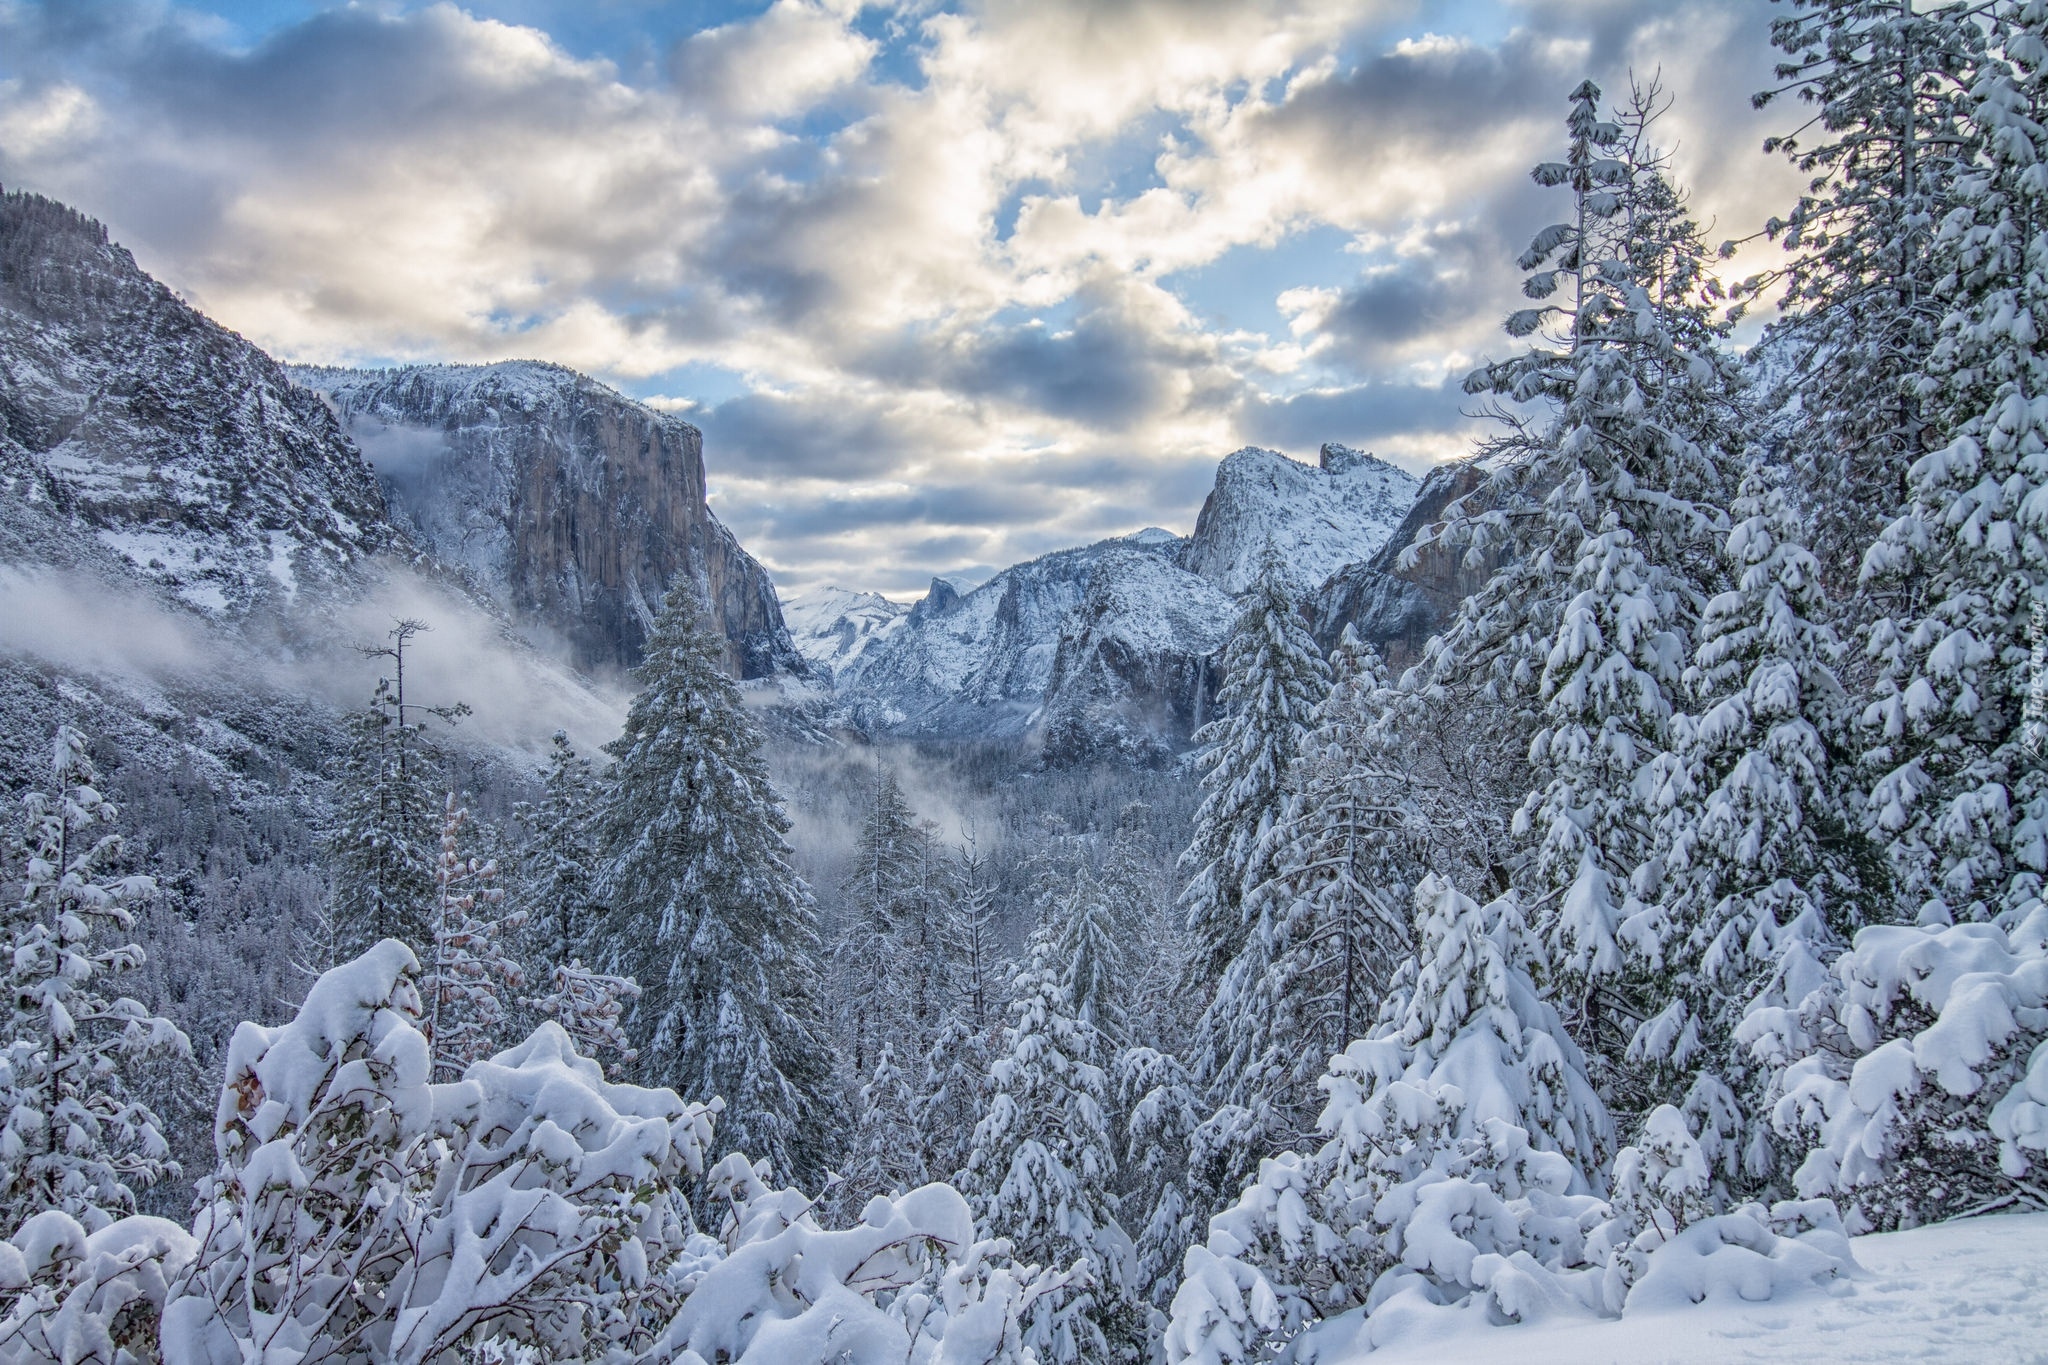 Park Narodowy Yosemite, Zima, Góry Sierra Nevada, Drzewa, Chmury, Stan Kalifornia, Stany Zjednoczone